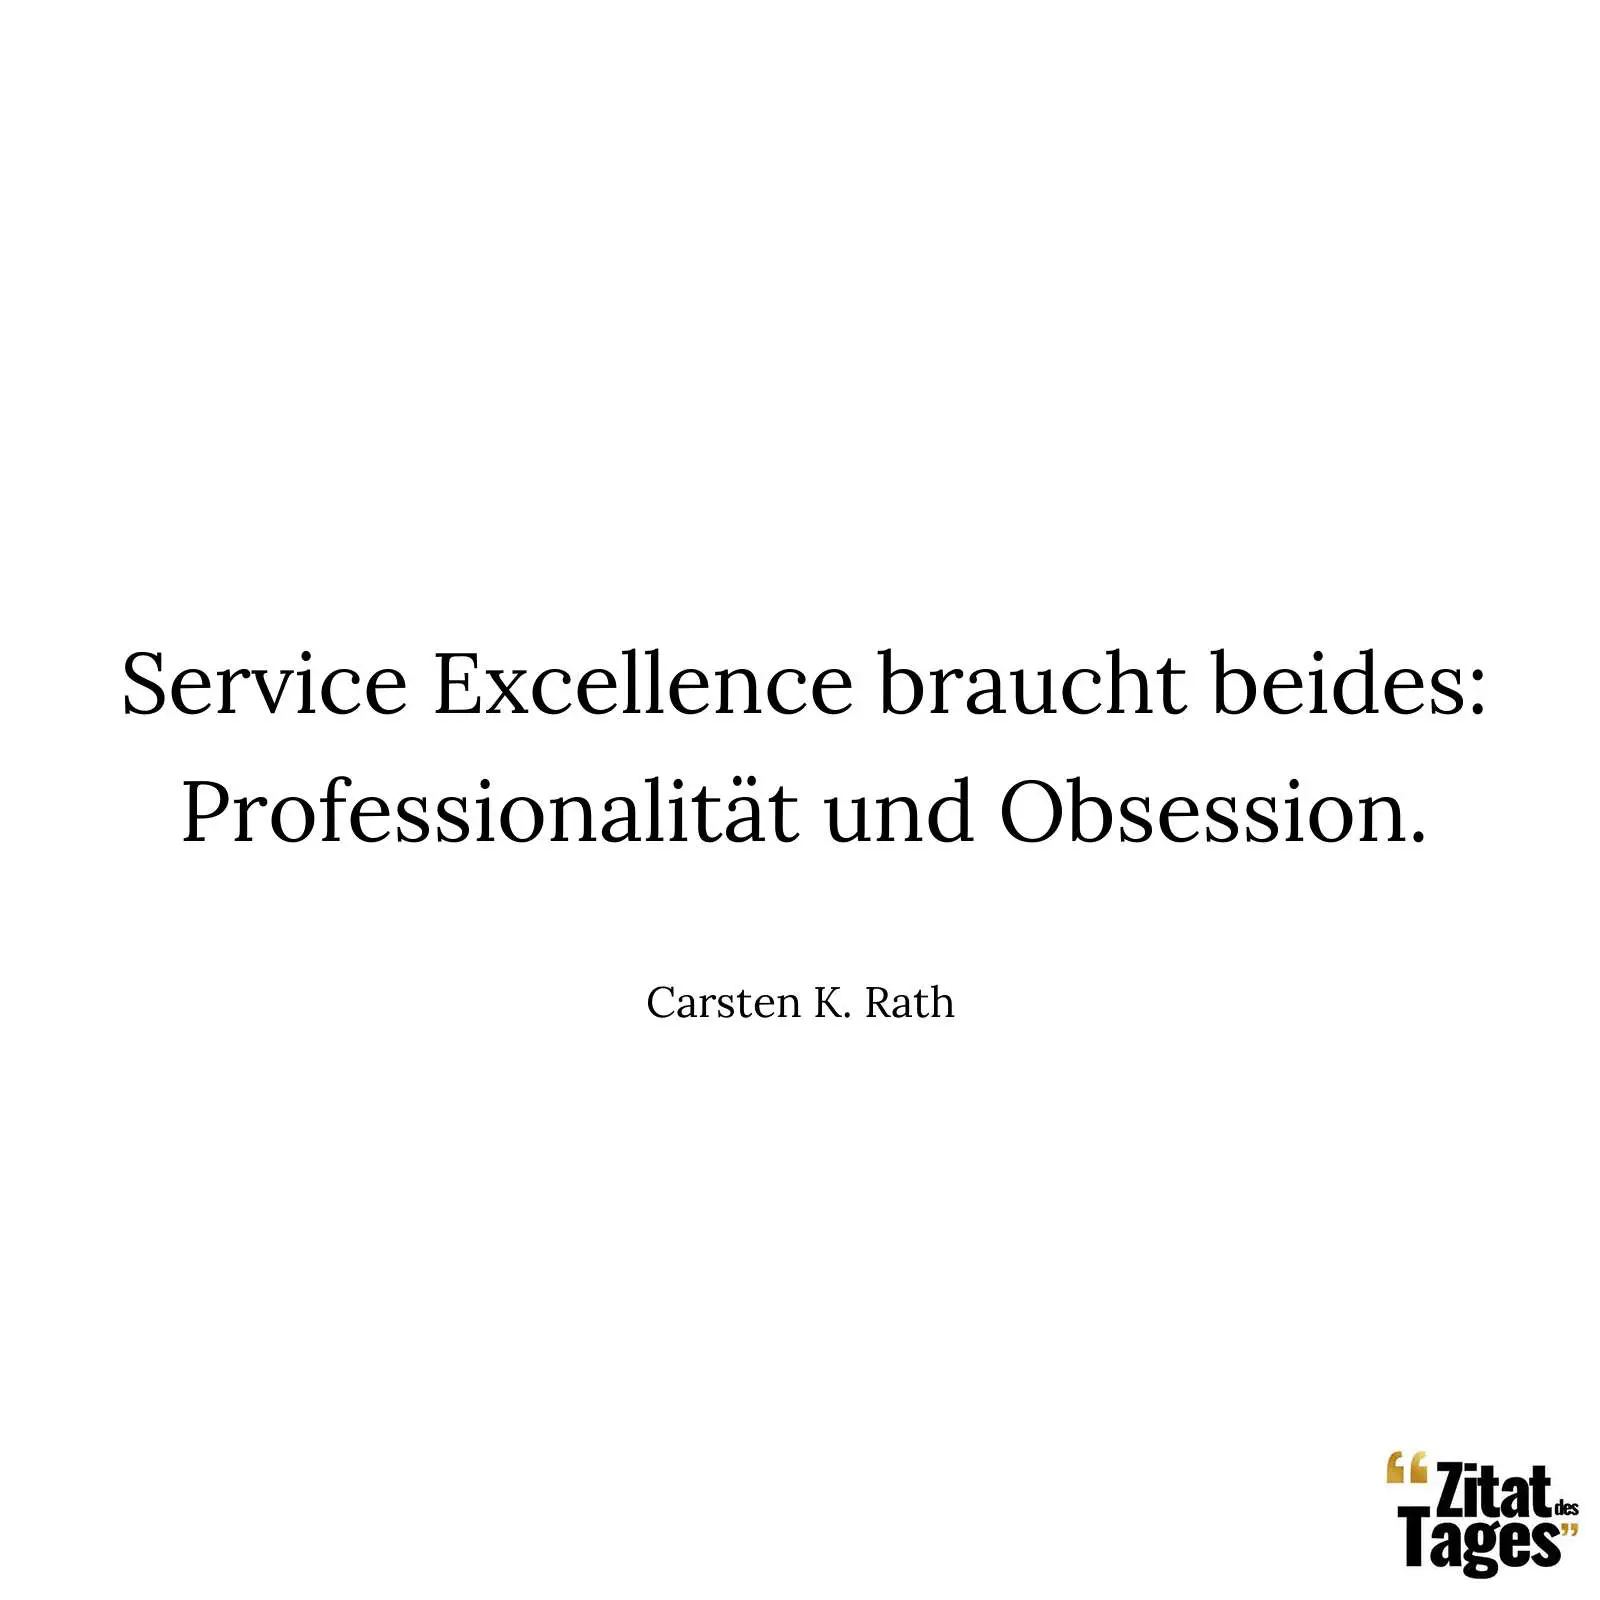 Service Excellence braucht beides: Professionalität und Obsession. - Carsten K. Rath